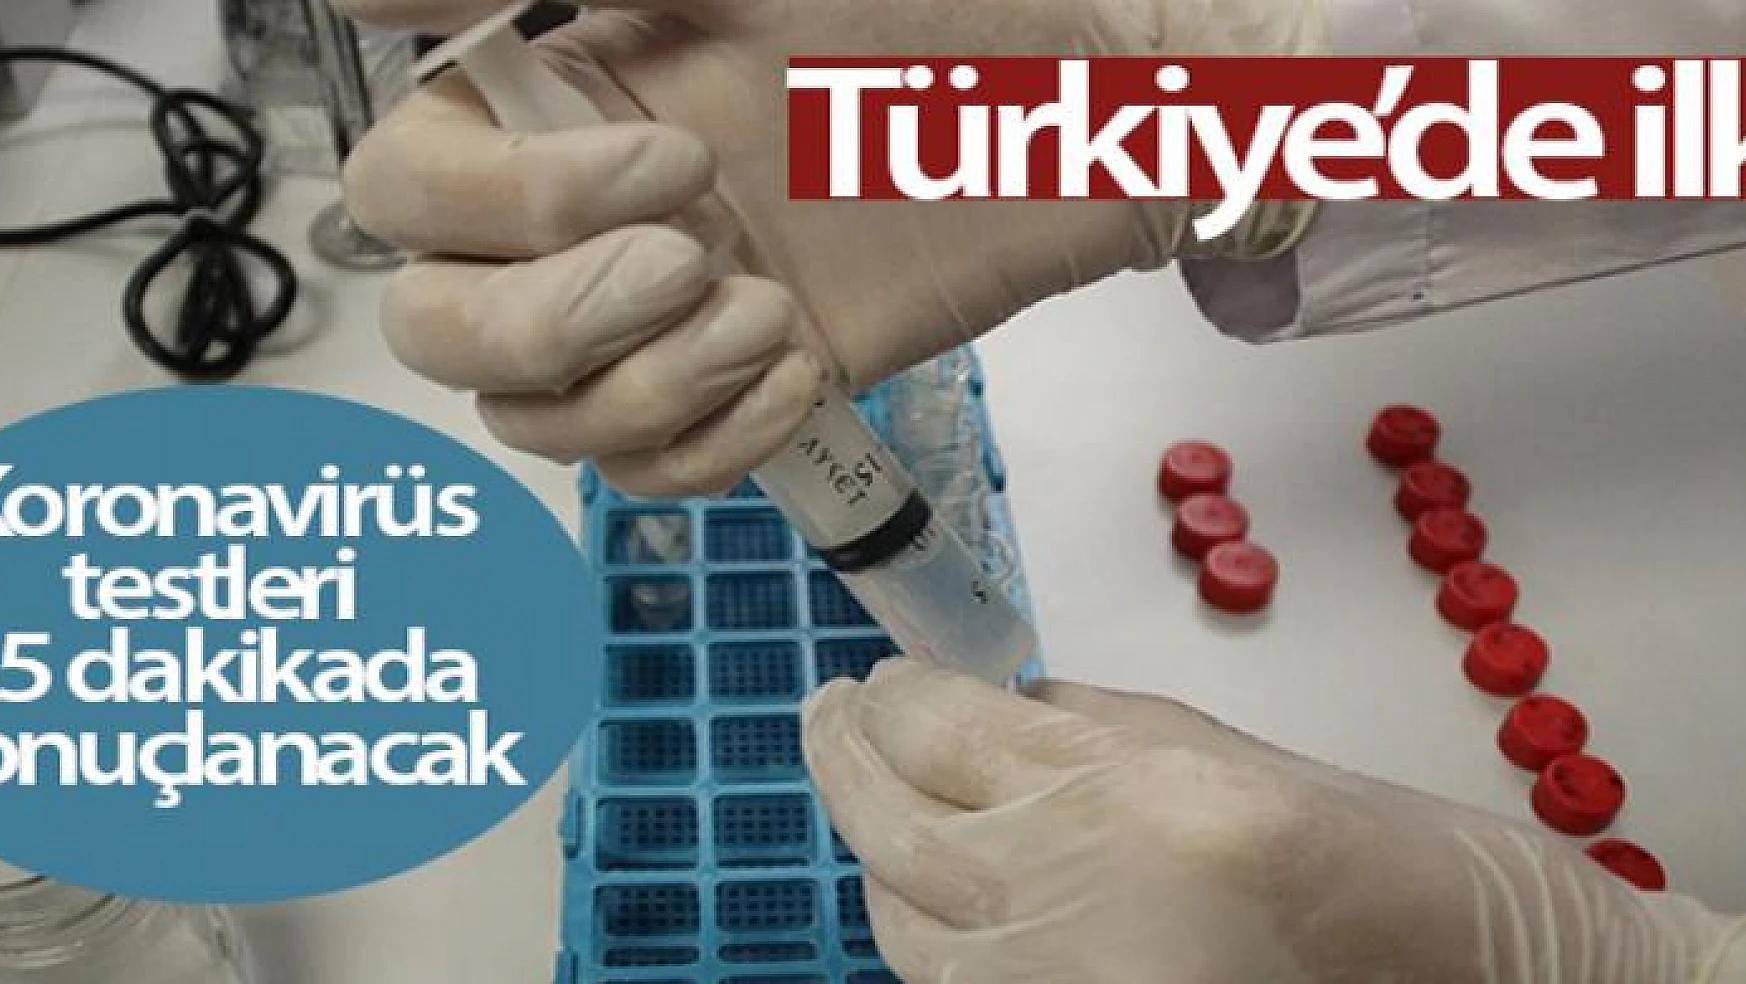 Türkiye'de ilk! Koronavirüs testleri 25 dakikada sonuçlanacak